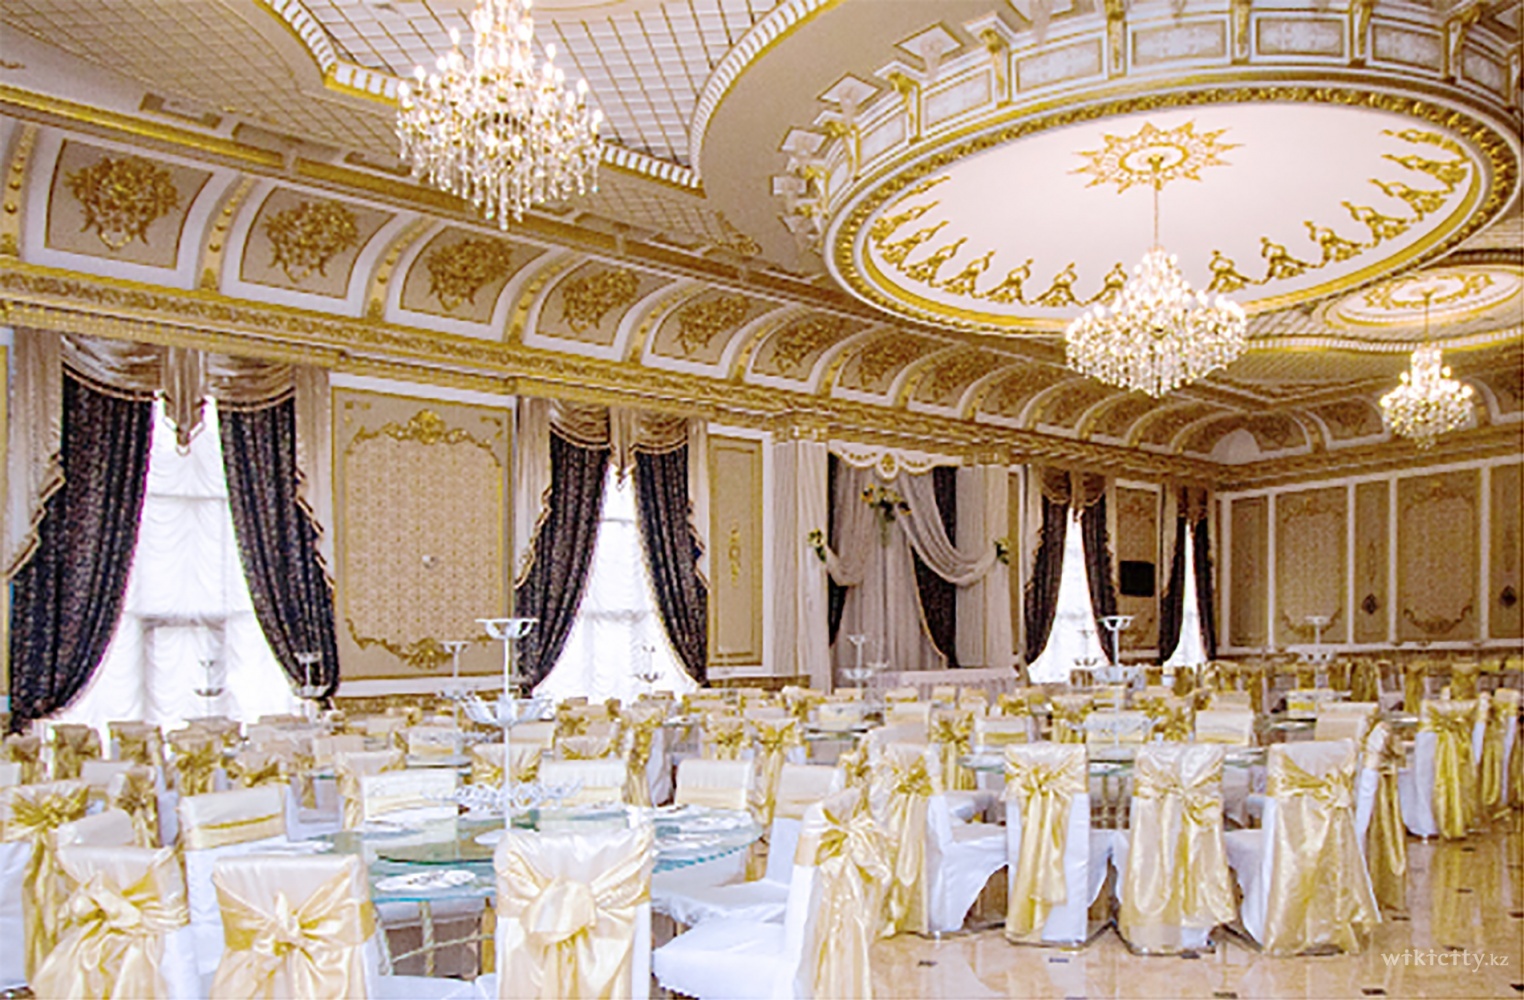 Фото Versailles - Almaty. Жемчужина “Versailles” — это огромный зал с панорамными окнами и богатым дврцовым убранством. Это место центр проведения громких праздников.
<br>
<br>Вместимость до 500 гостей.